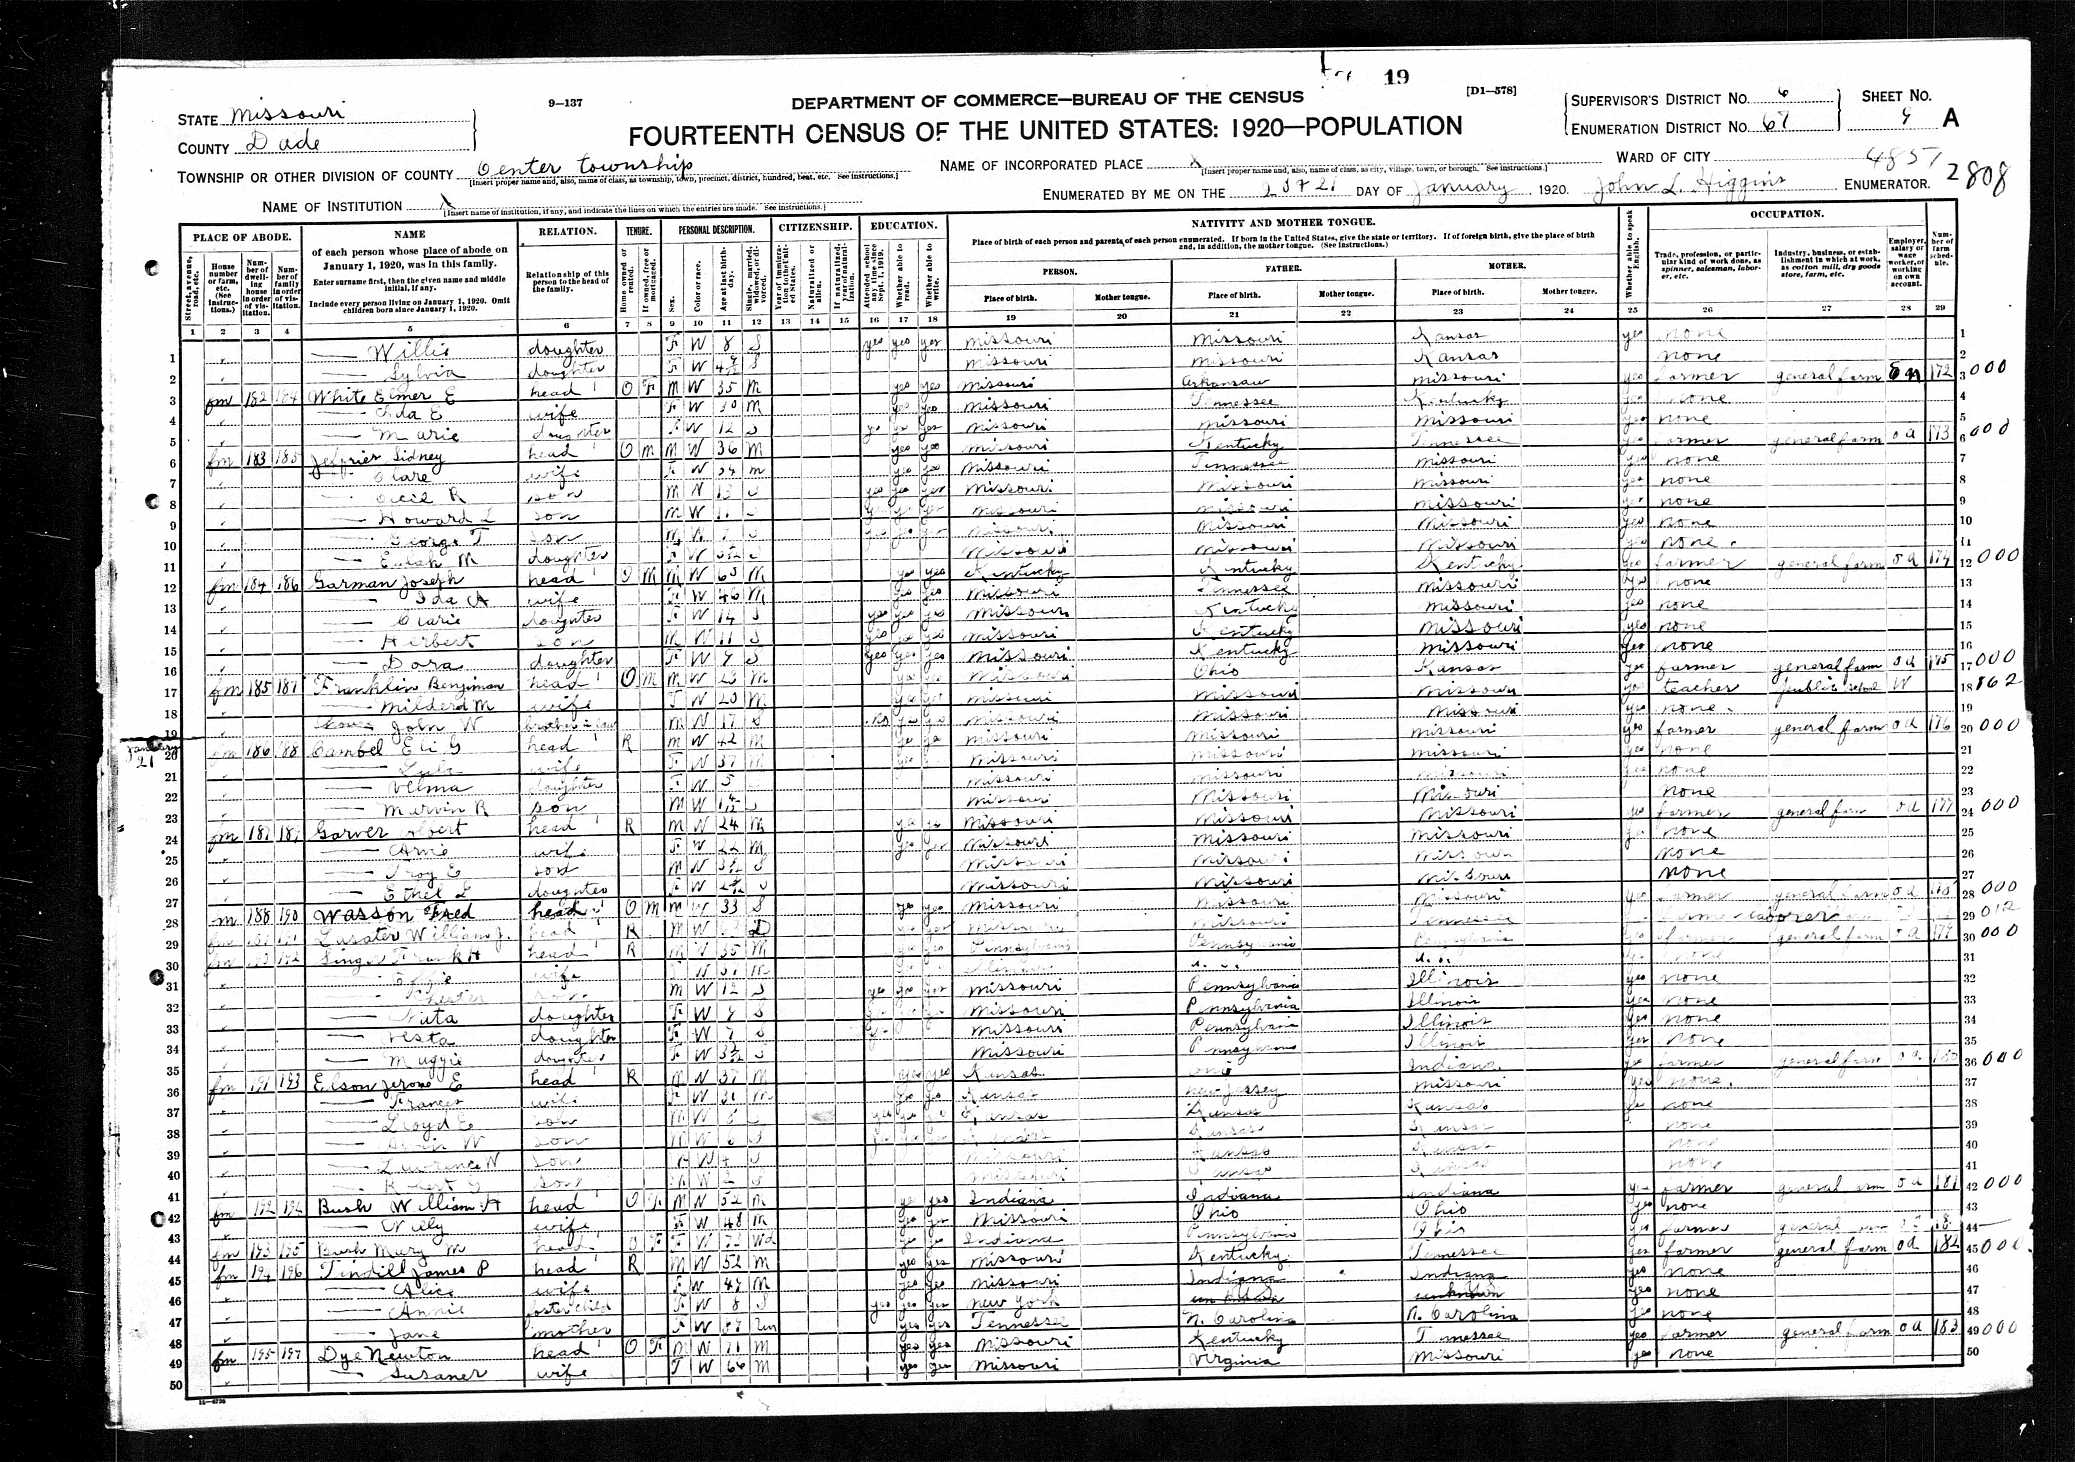 William J. Lasater, 1920 Dade County, Missouri, census (divorced)